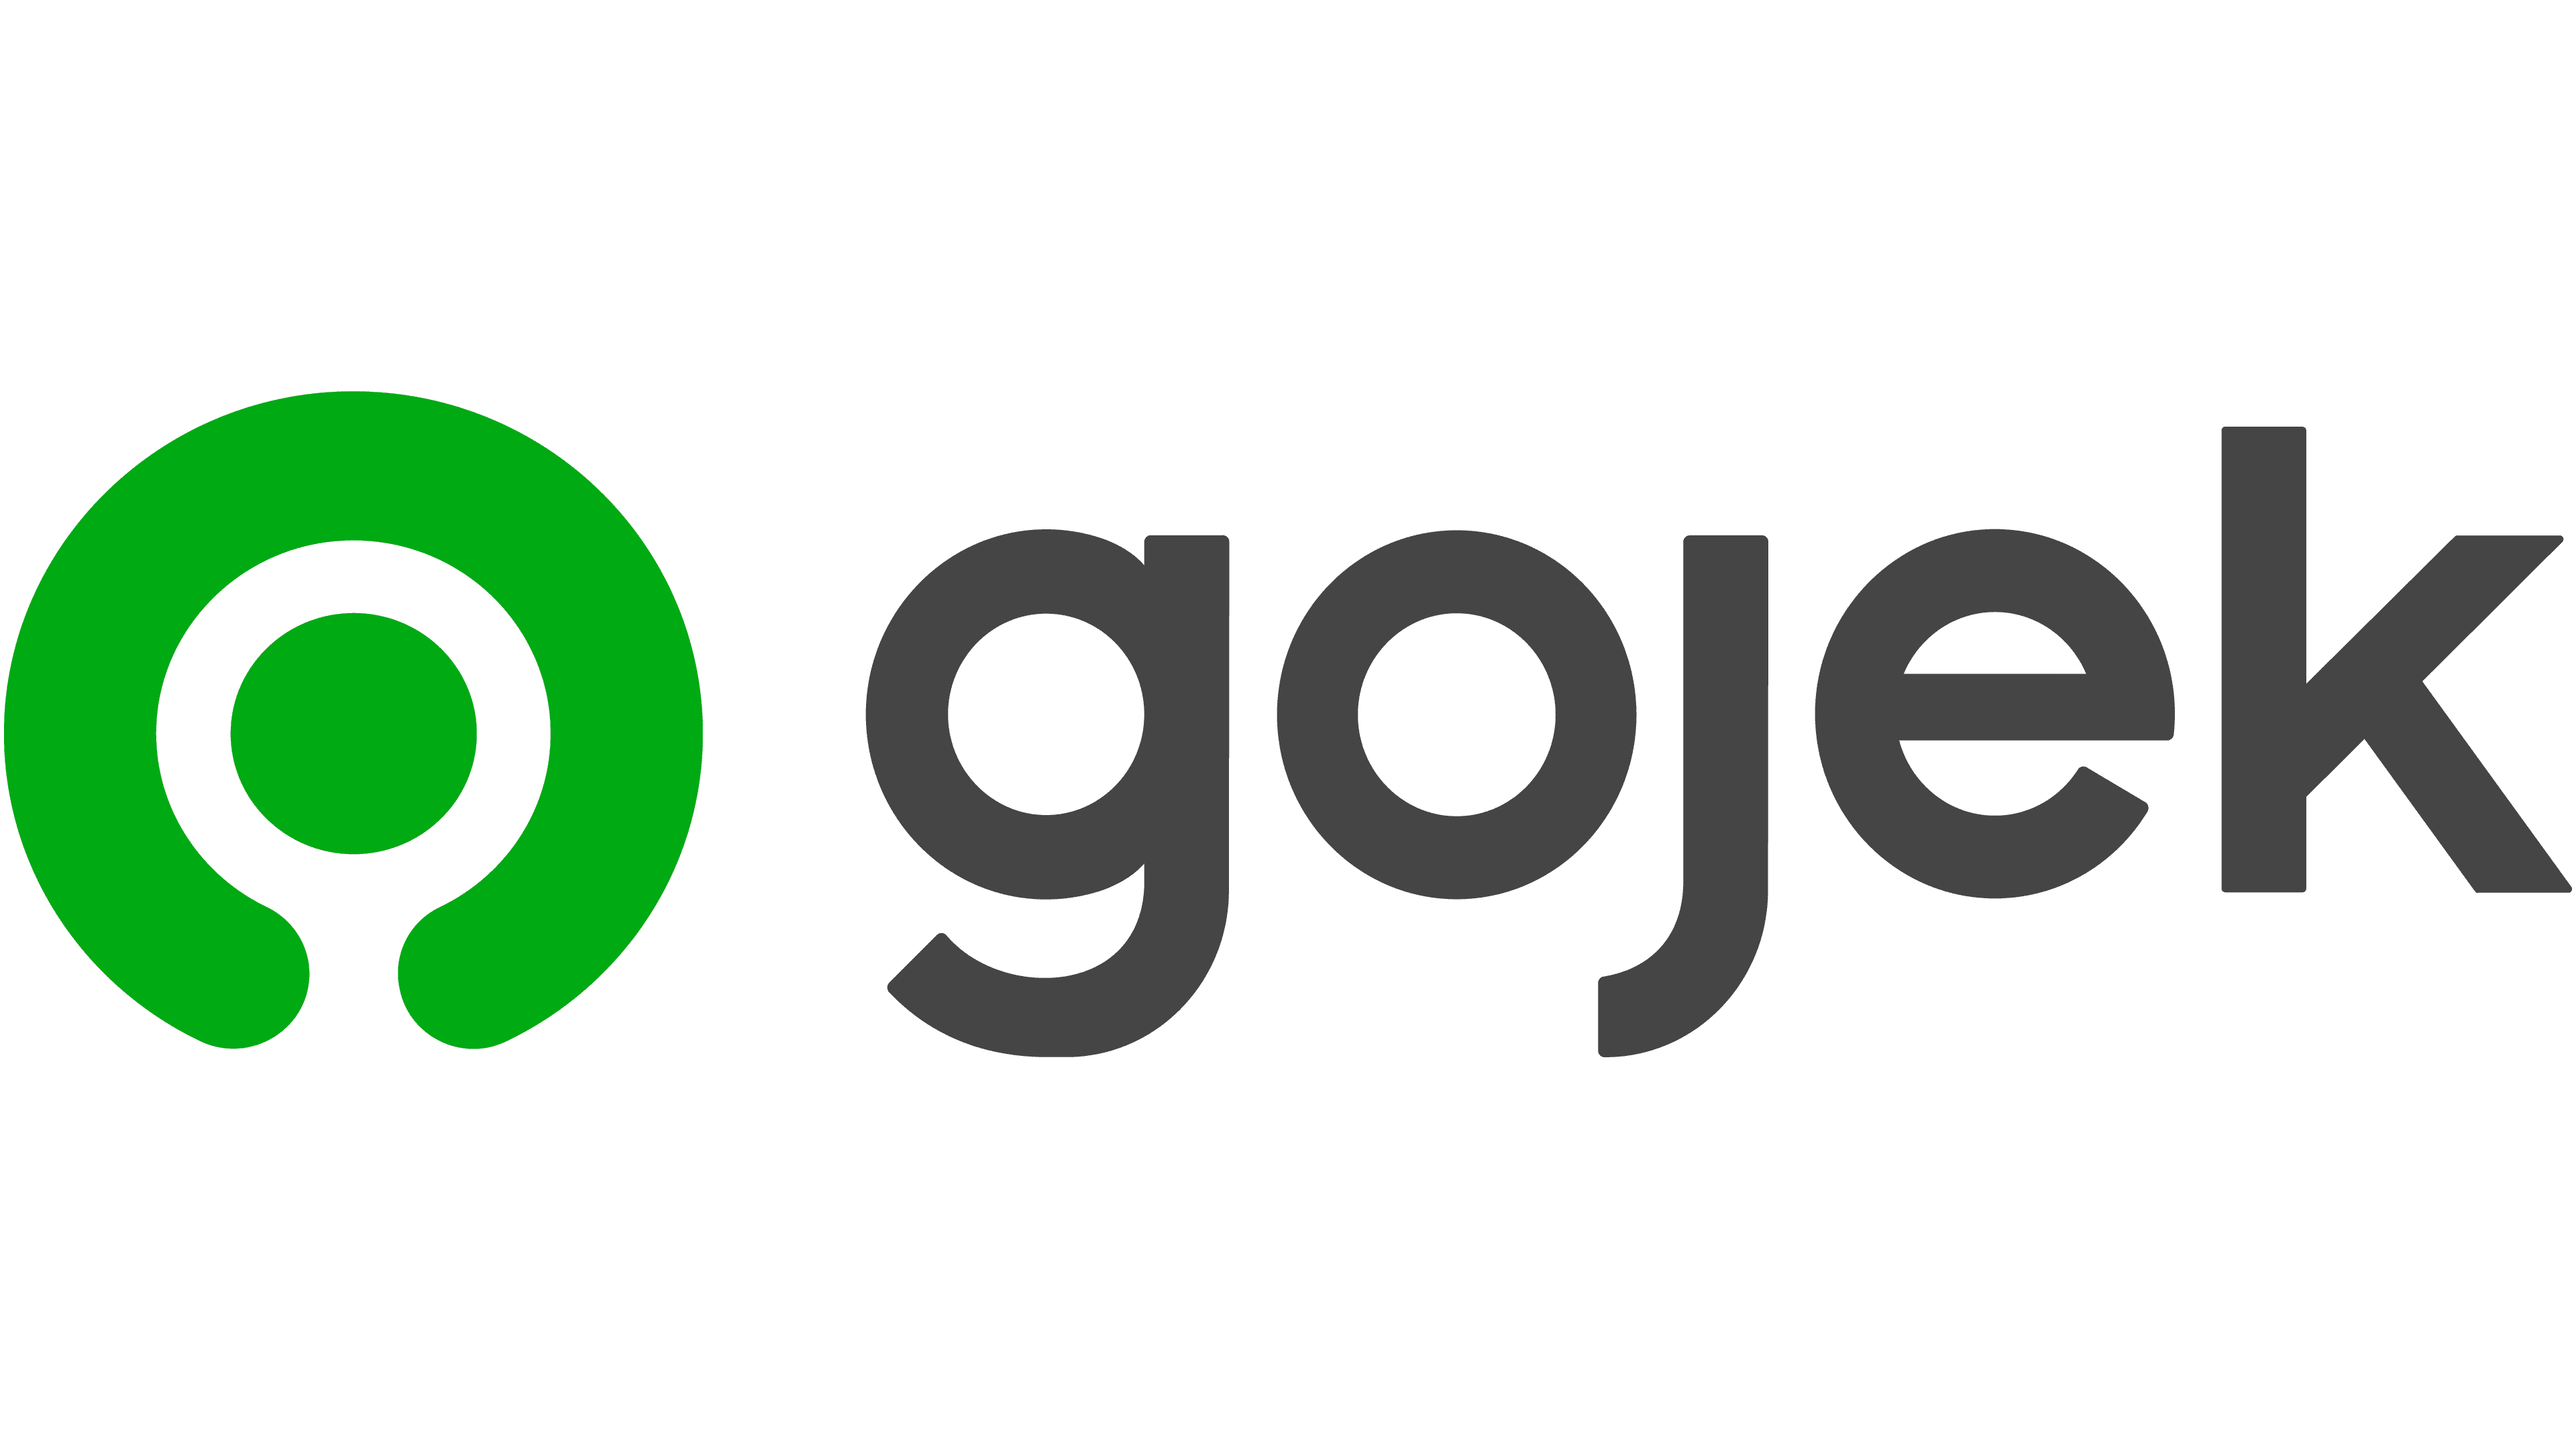 gojek logo